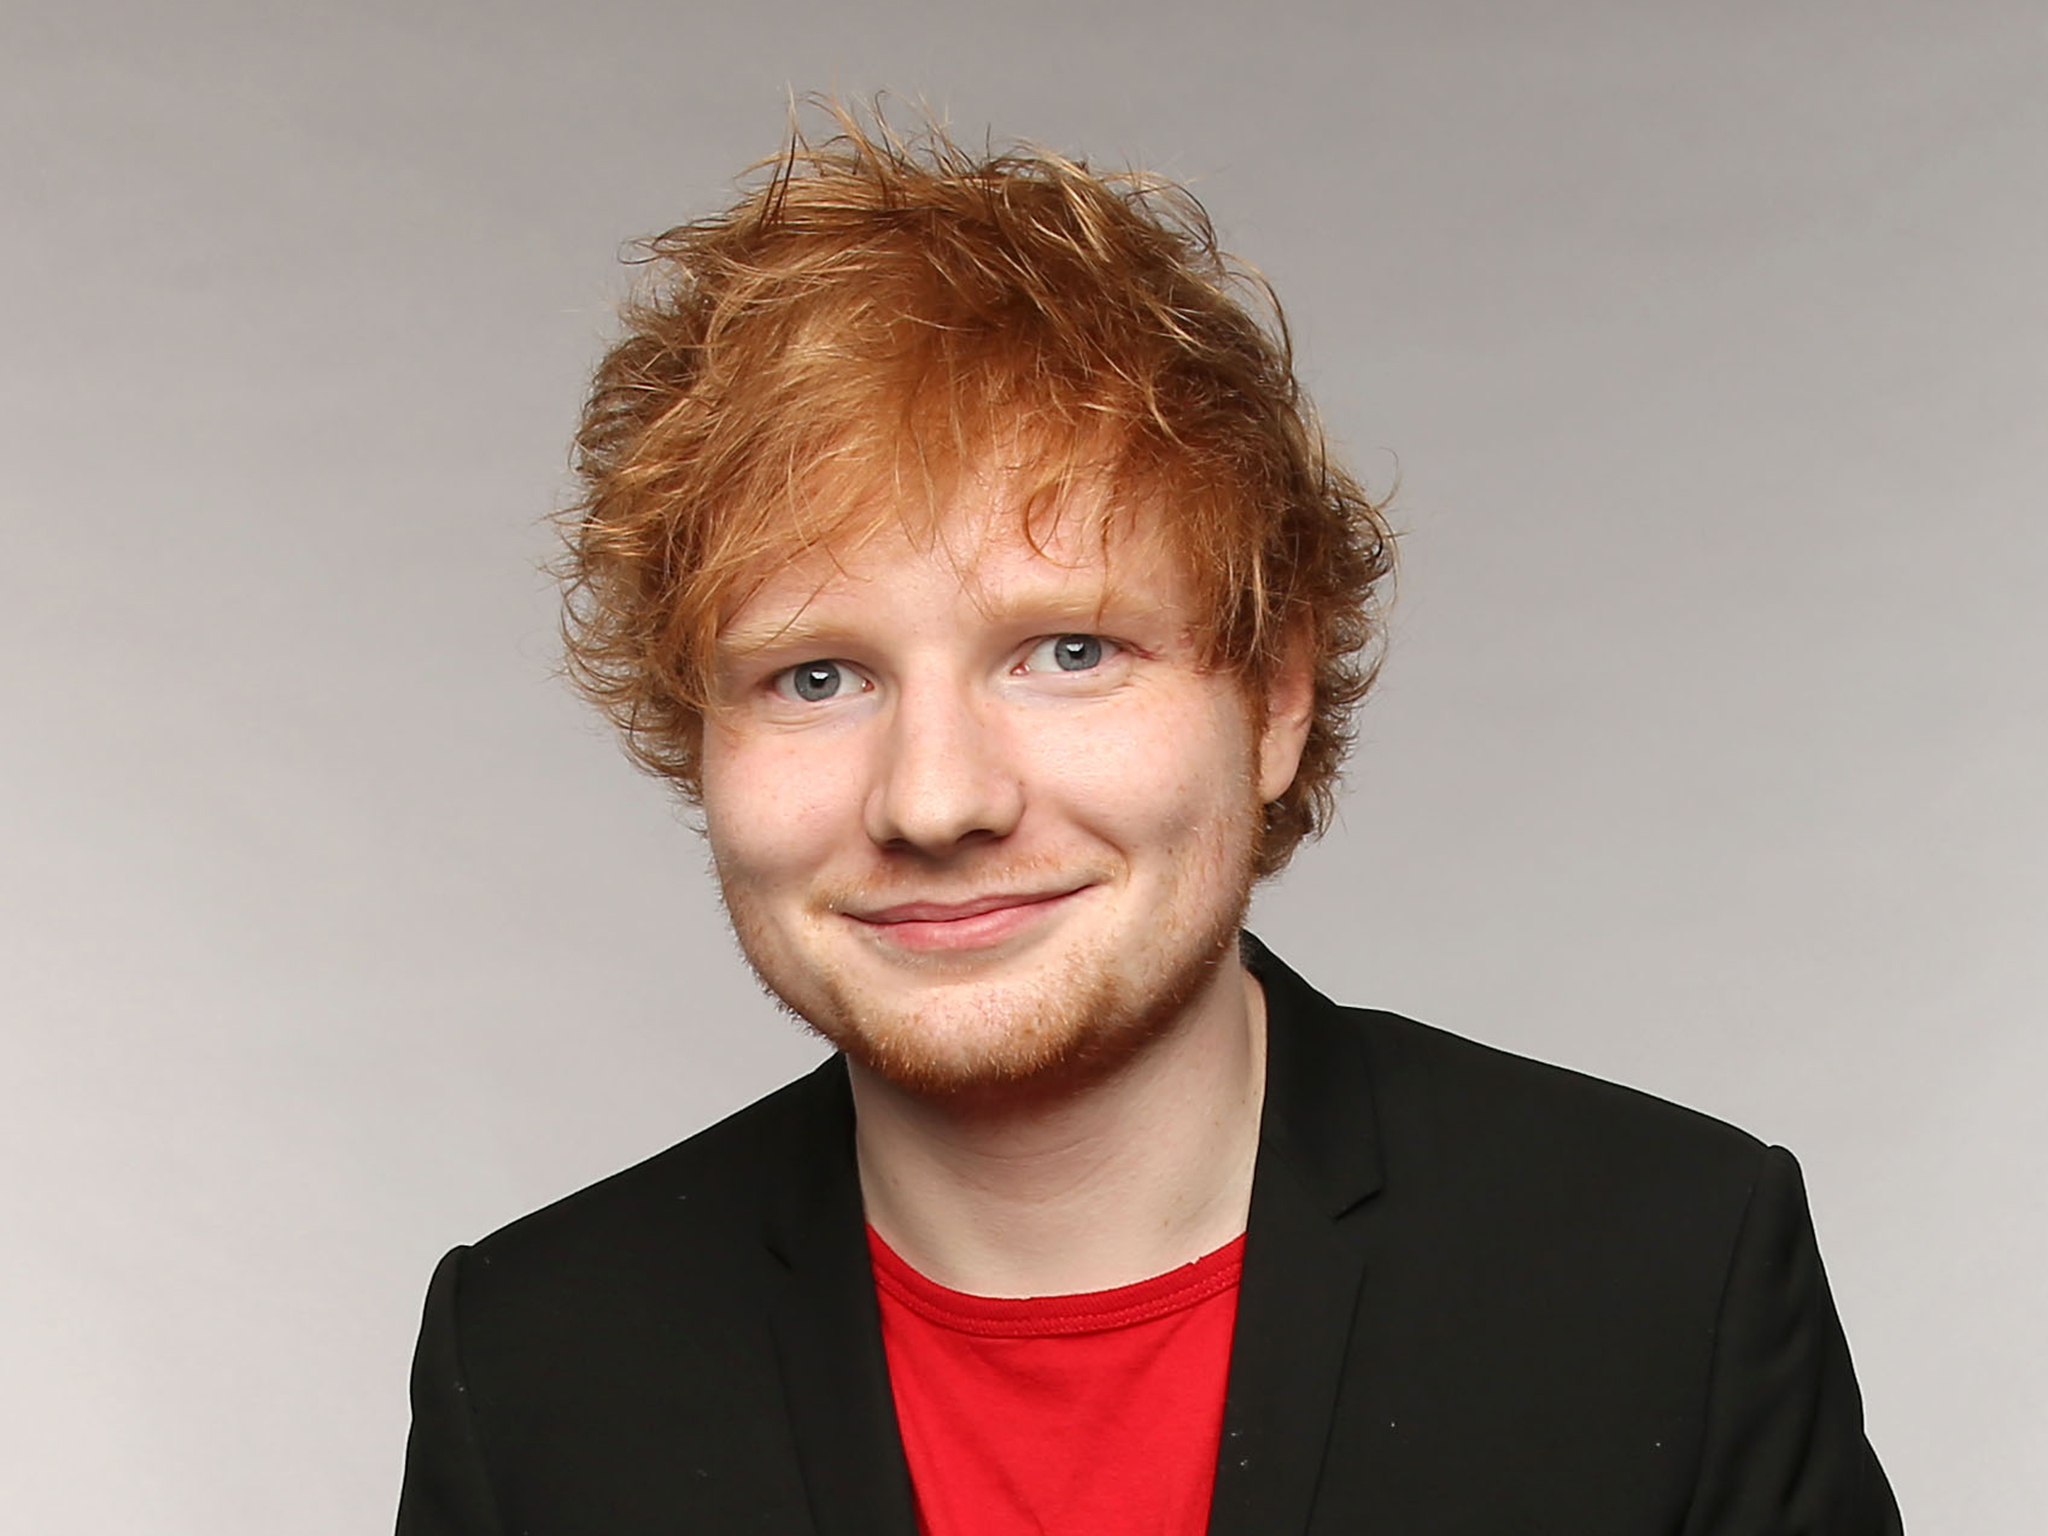 HQ Ed Sheeran Wallpapers | File 766.81Kb